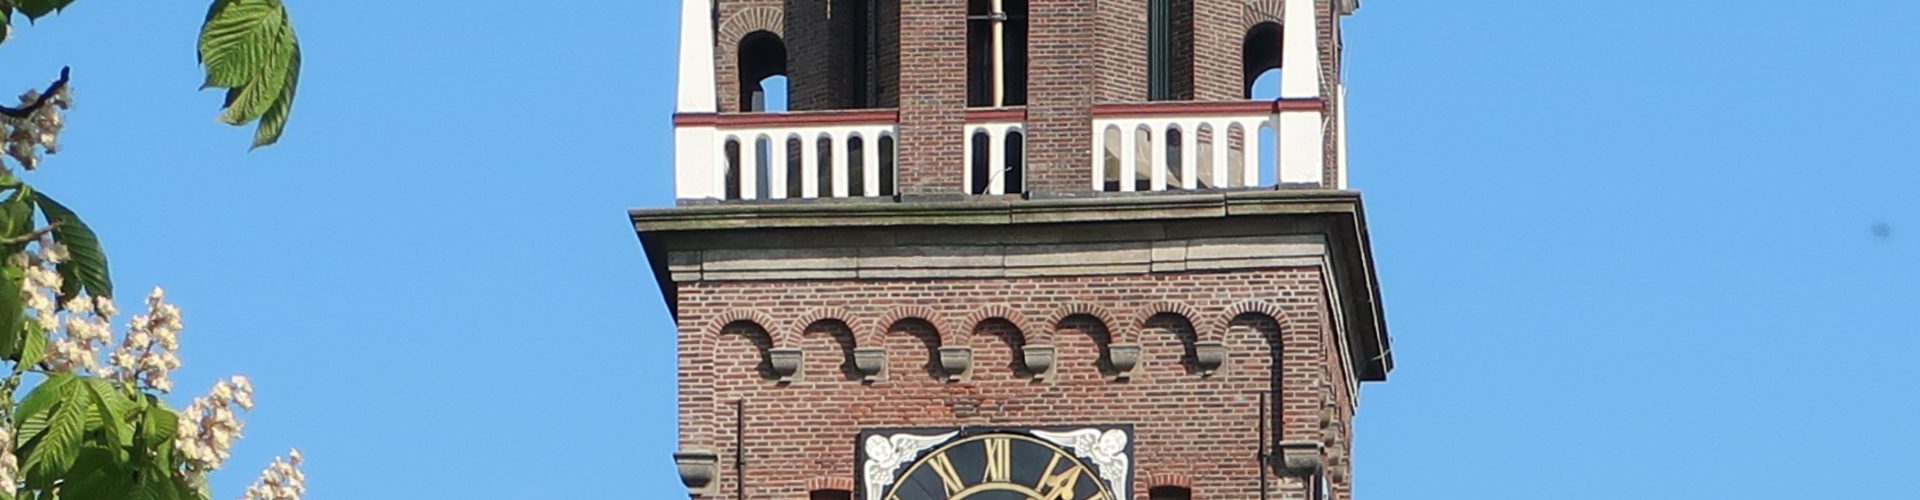 Keyserkerk, toren, trans, klok en bloesem